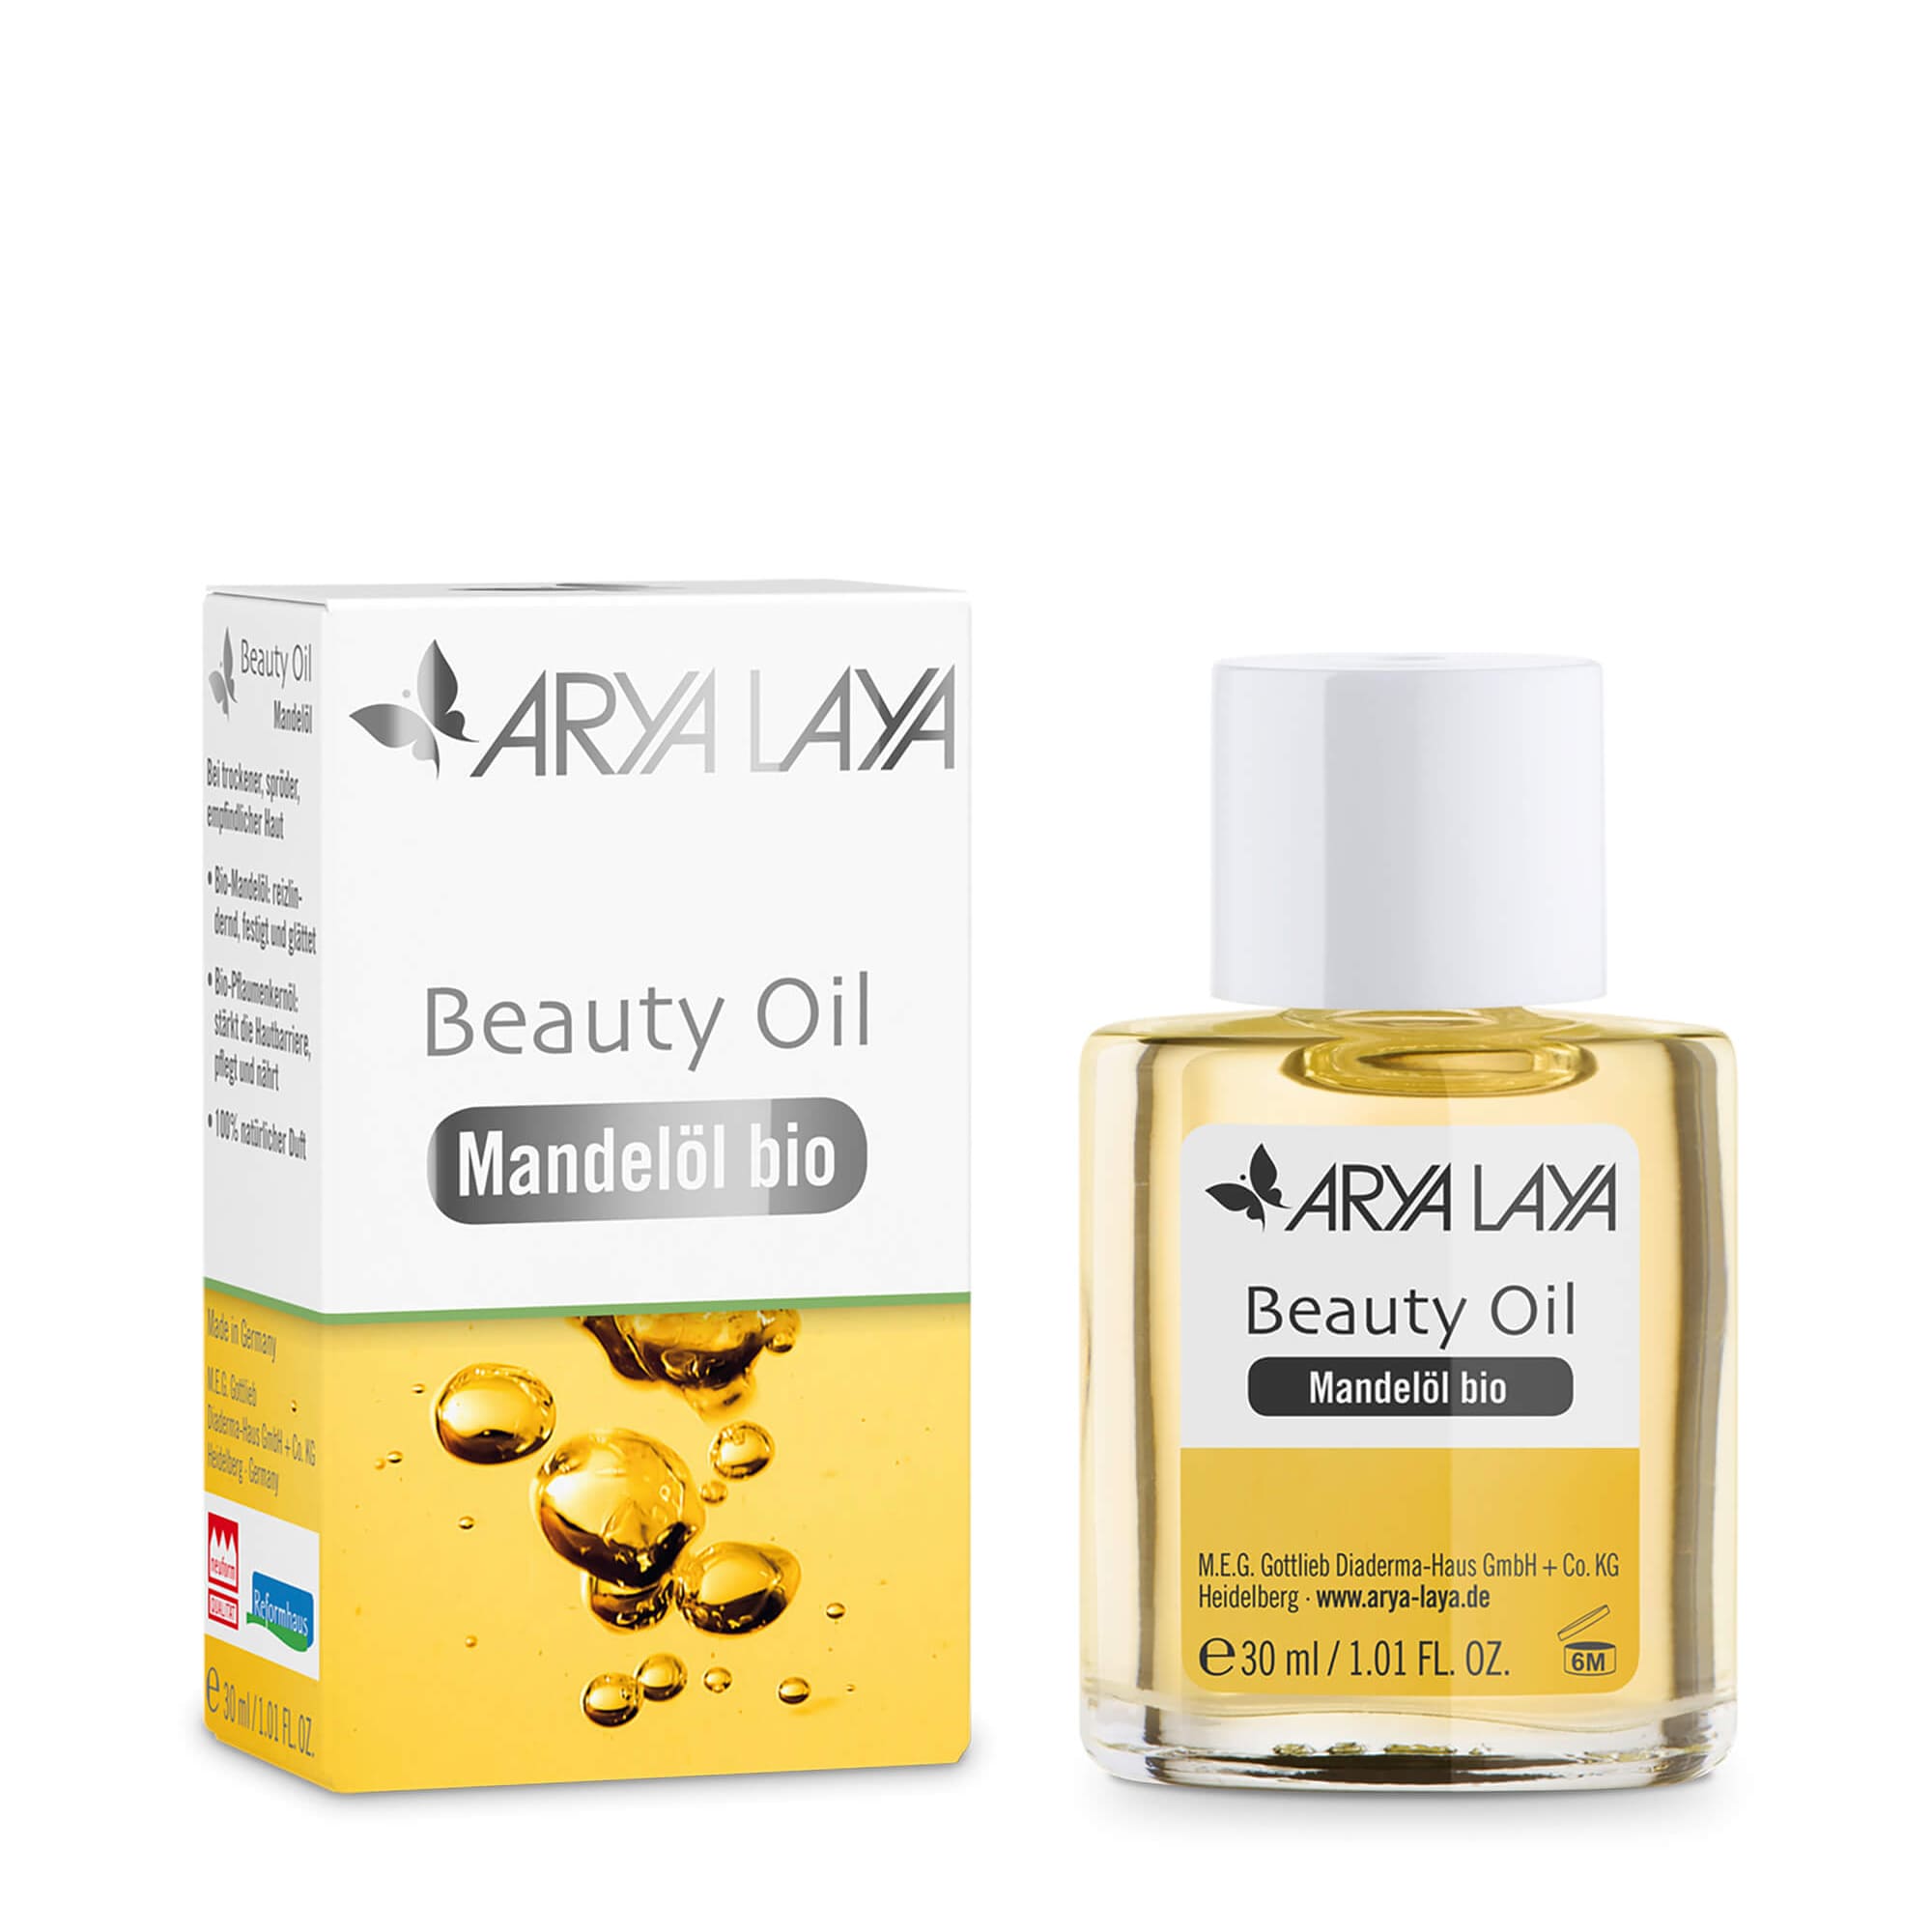 Glasfläschchen und Faltschachtel mit ARYA LAYA Beauty Oil Mandelöl bio, 30 ml 